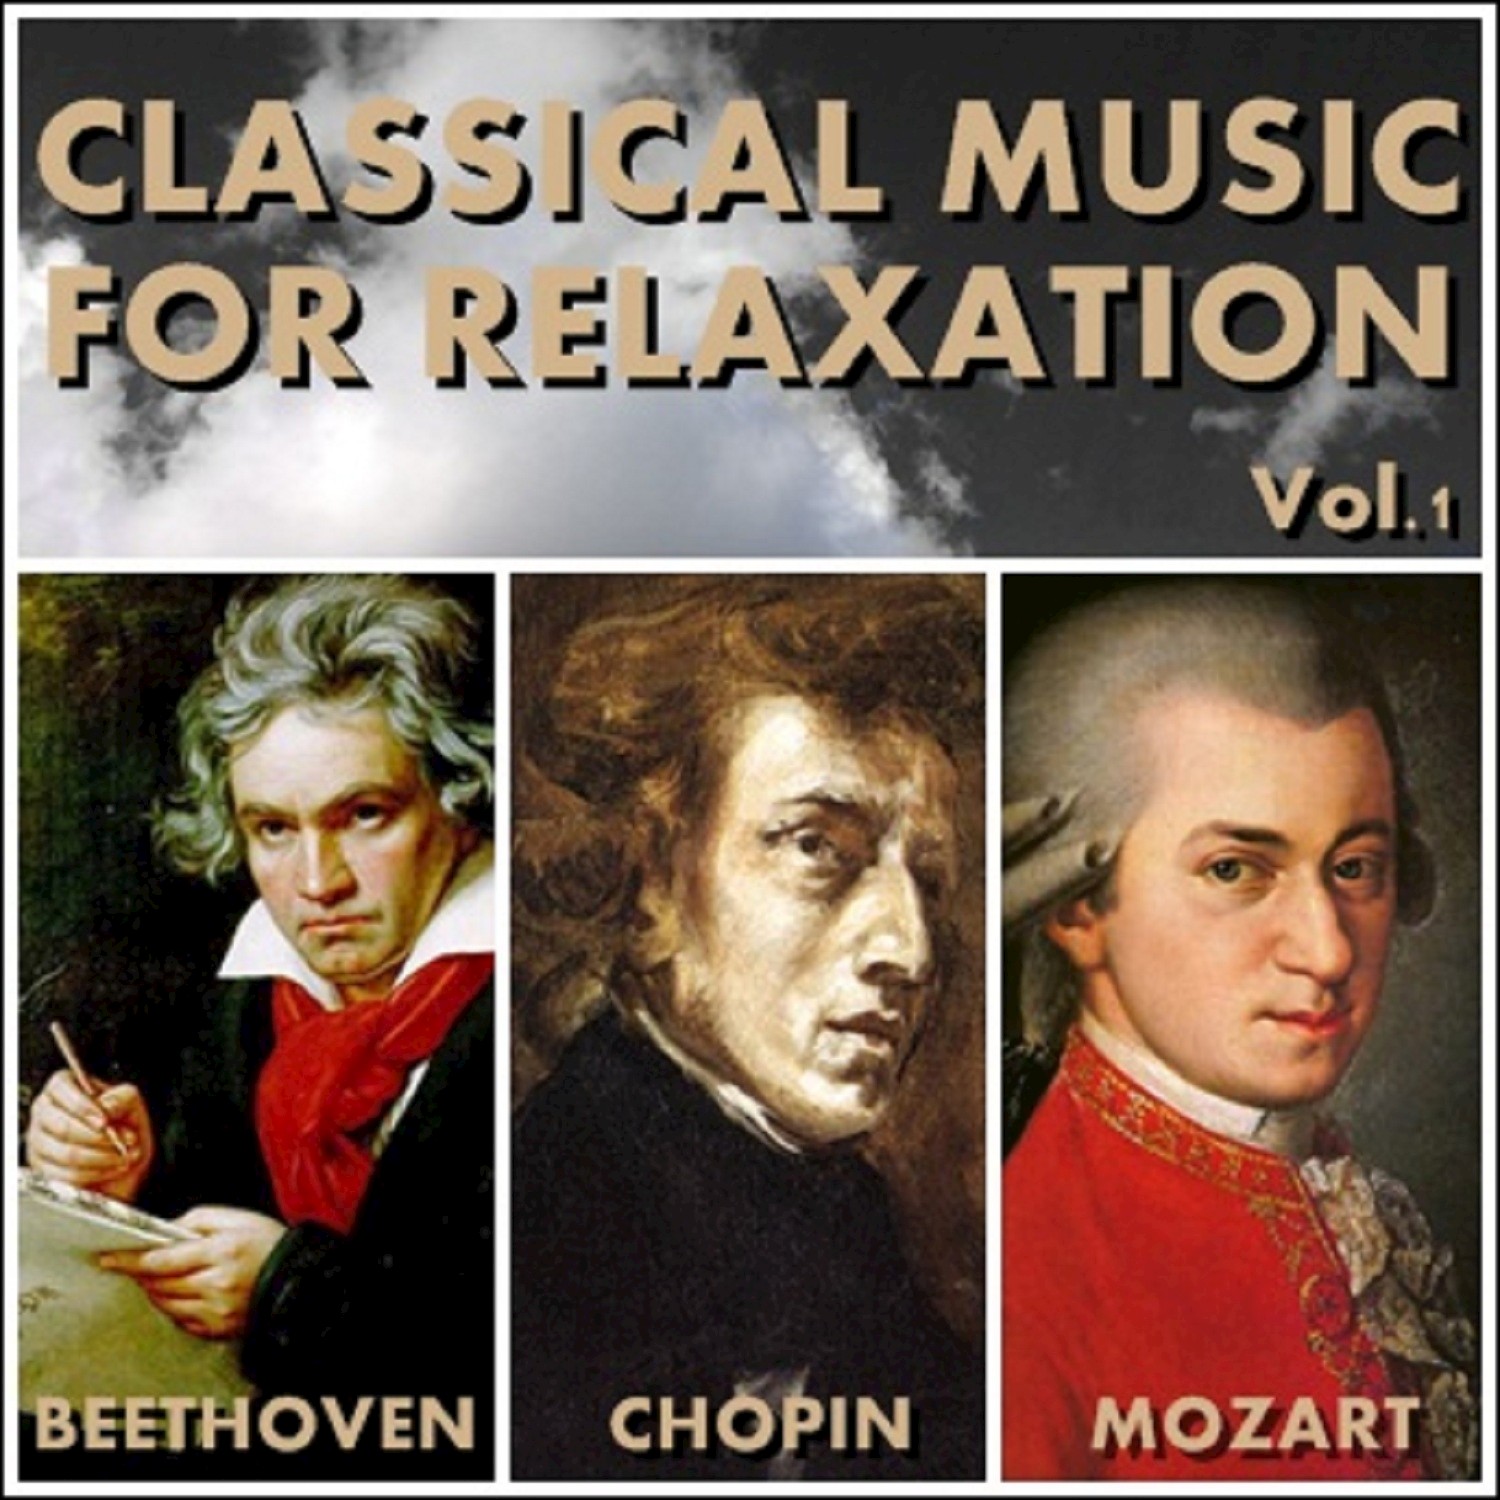 Mozart' s Petite Musique de Nuit